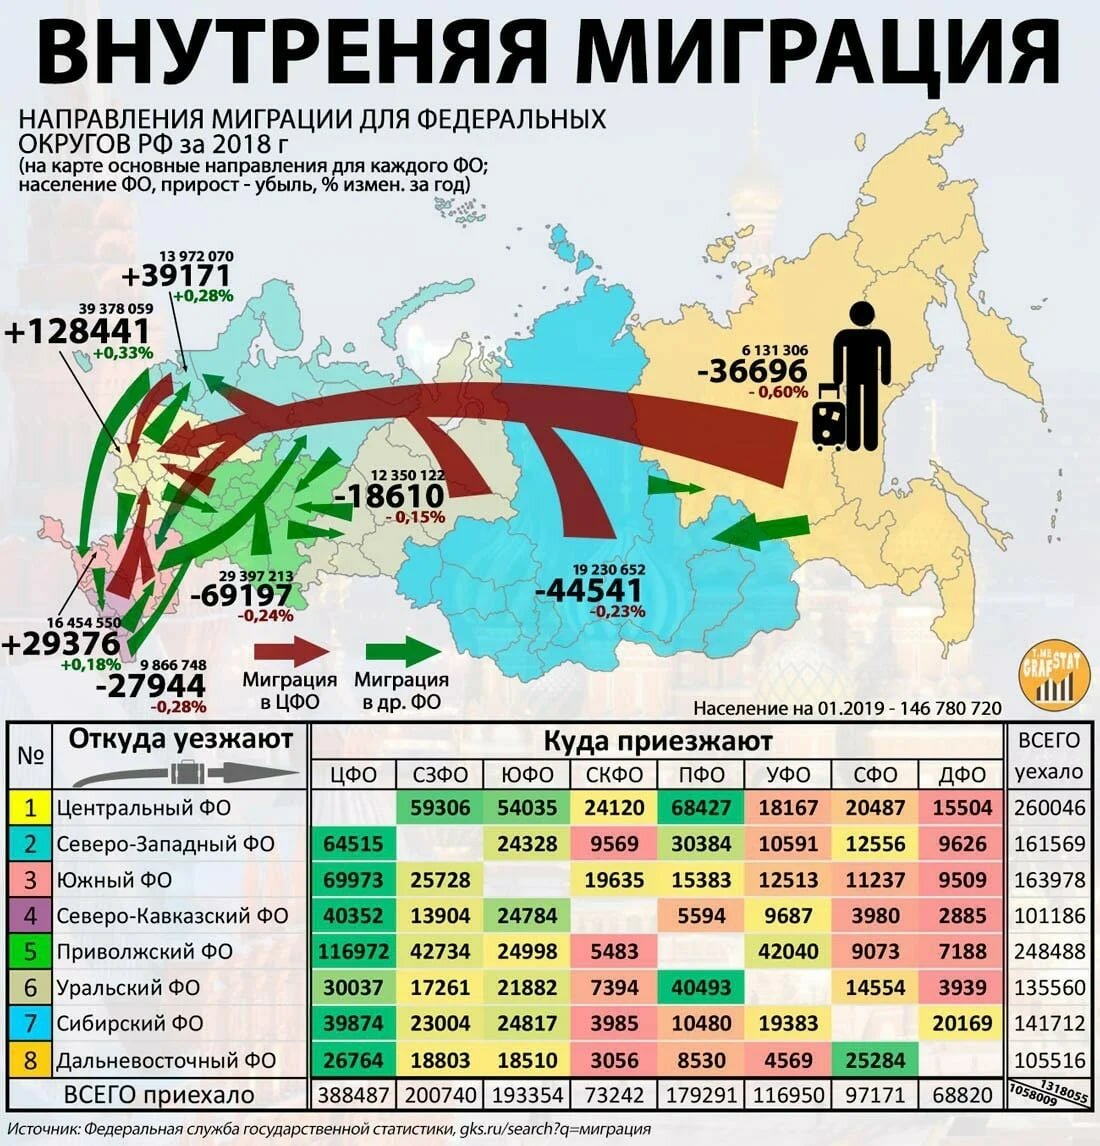 Проанализируйте внутренние миграции россии. Карта миграции населения России 2020. Карта миграции населения России 2021. Карта внутренней миграции России 2020. Внутренняя миграция в России 2020.